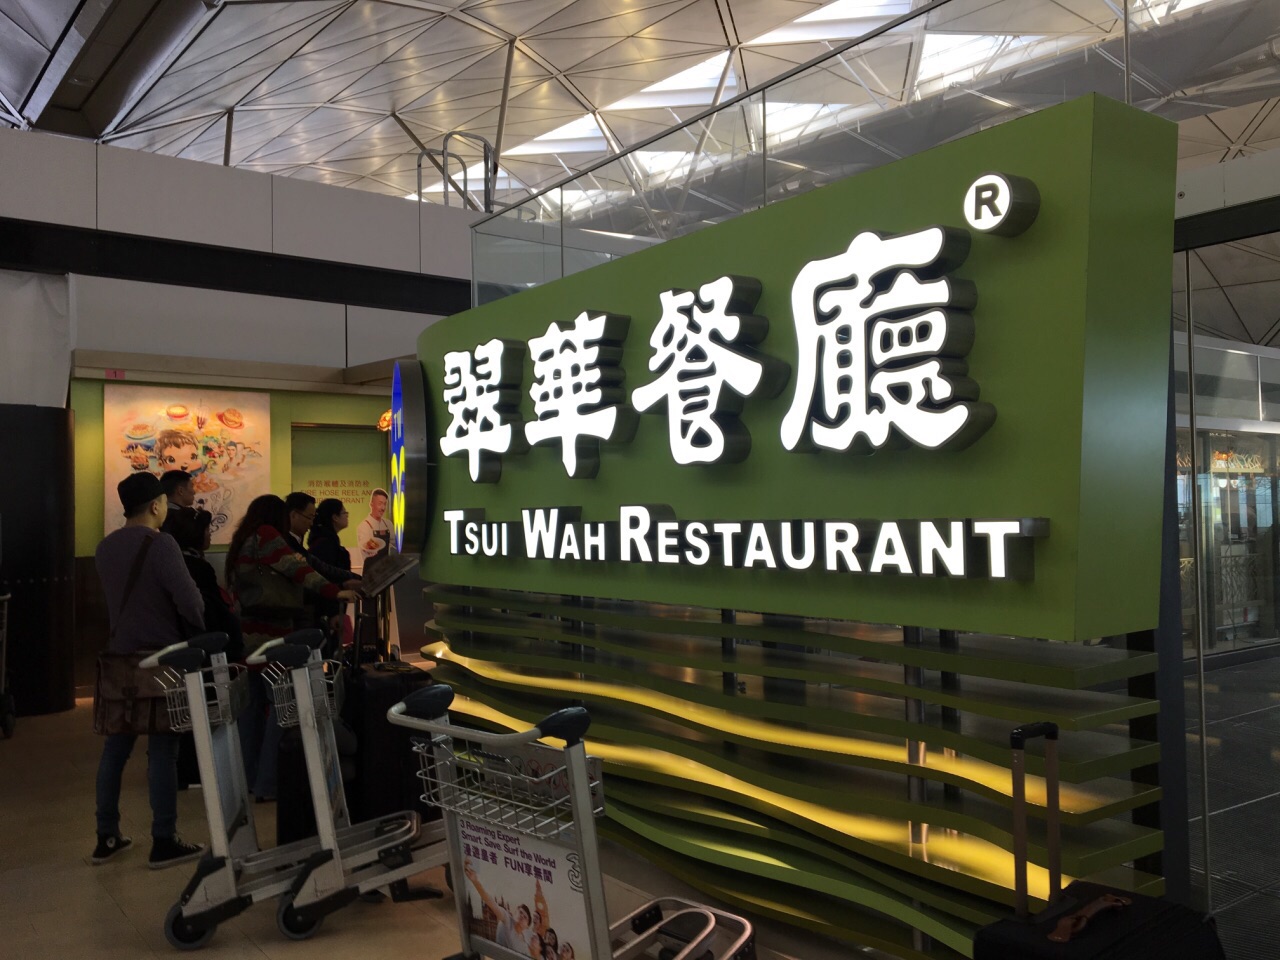 翠华餐厅(机场店)